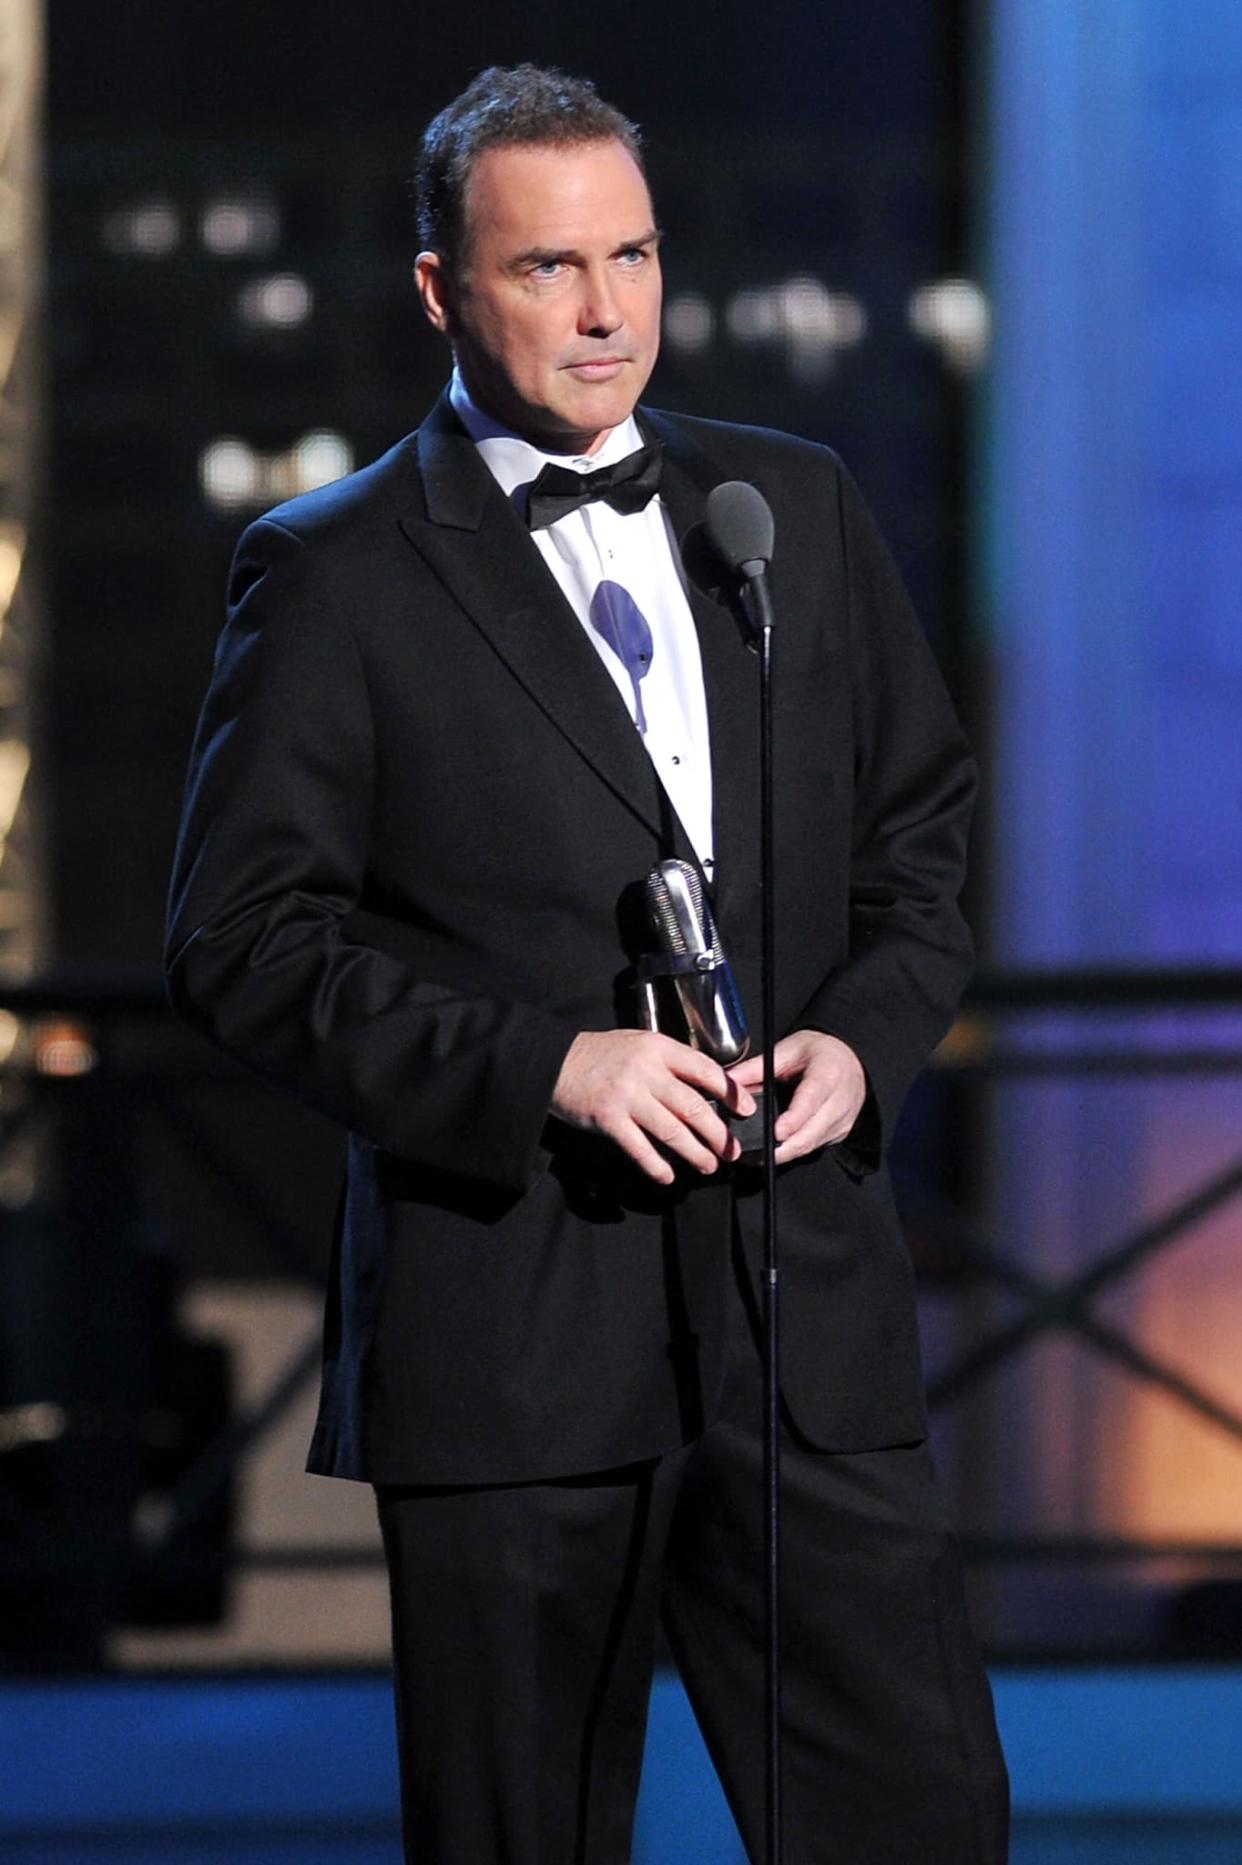 L'acteur et comique Norm Macdonald en 2012 - Theo Wargo - Getty Images via AFP